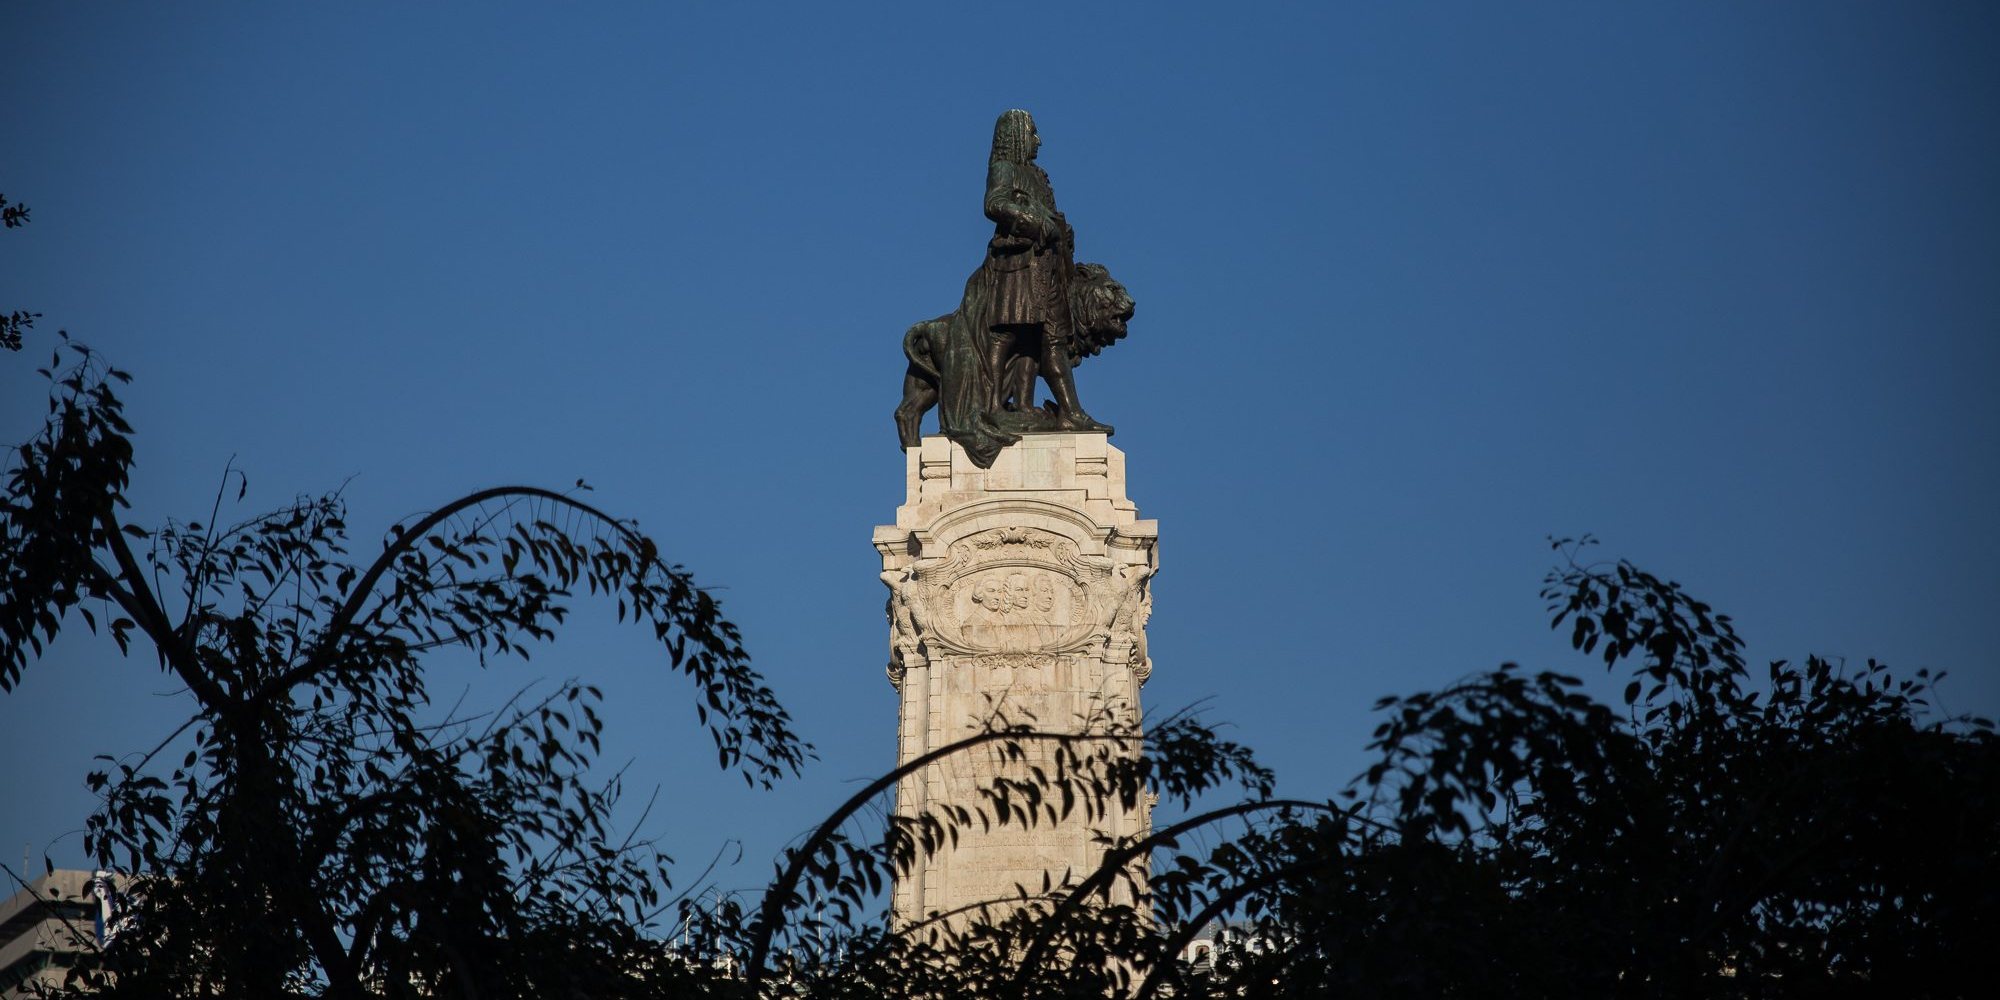 Para Nuno Palma, a estátua do Marquês de Pombal representa hoje o triunfo da propaganda sobre a verdade, mais de dois séculos depois.